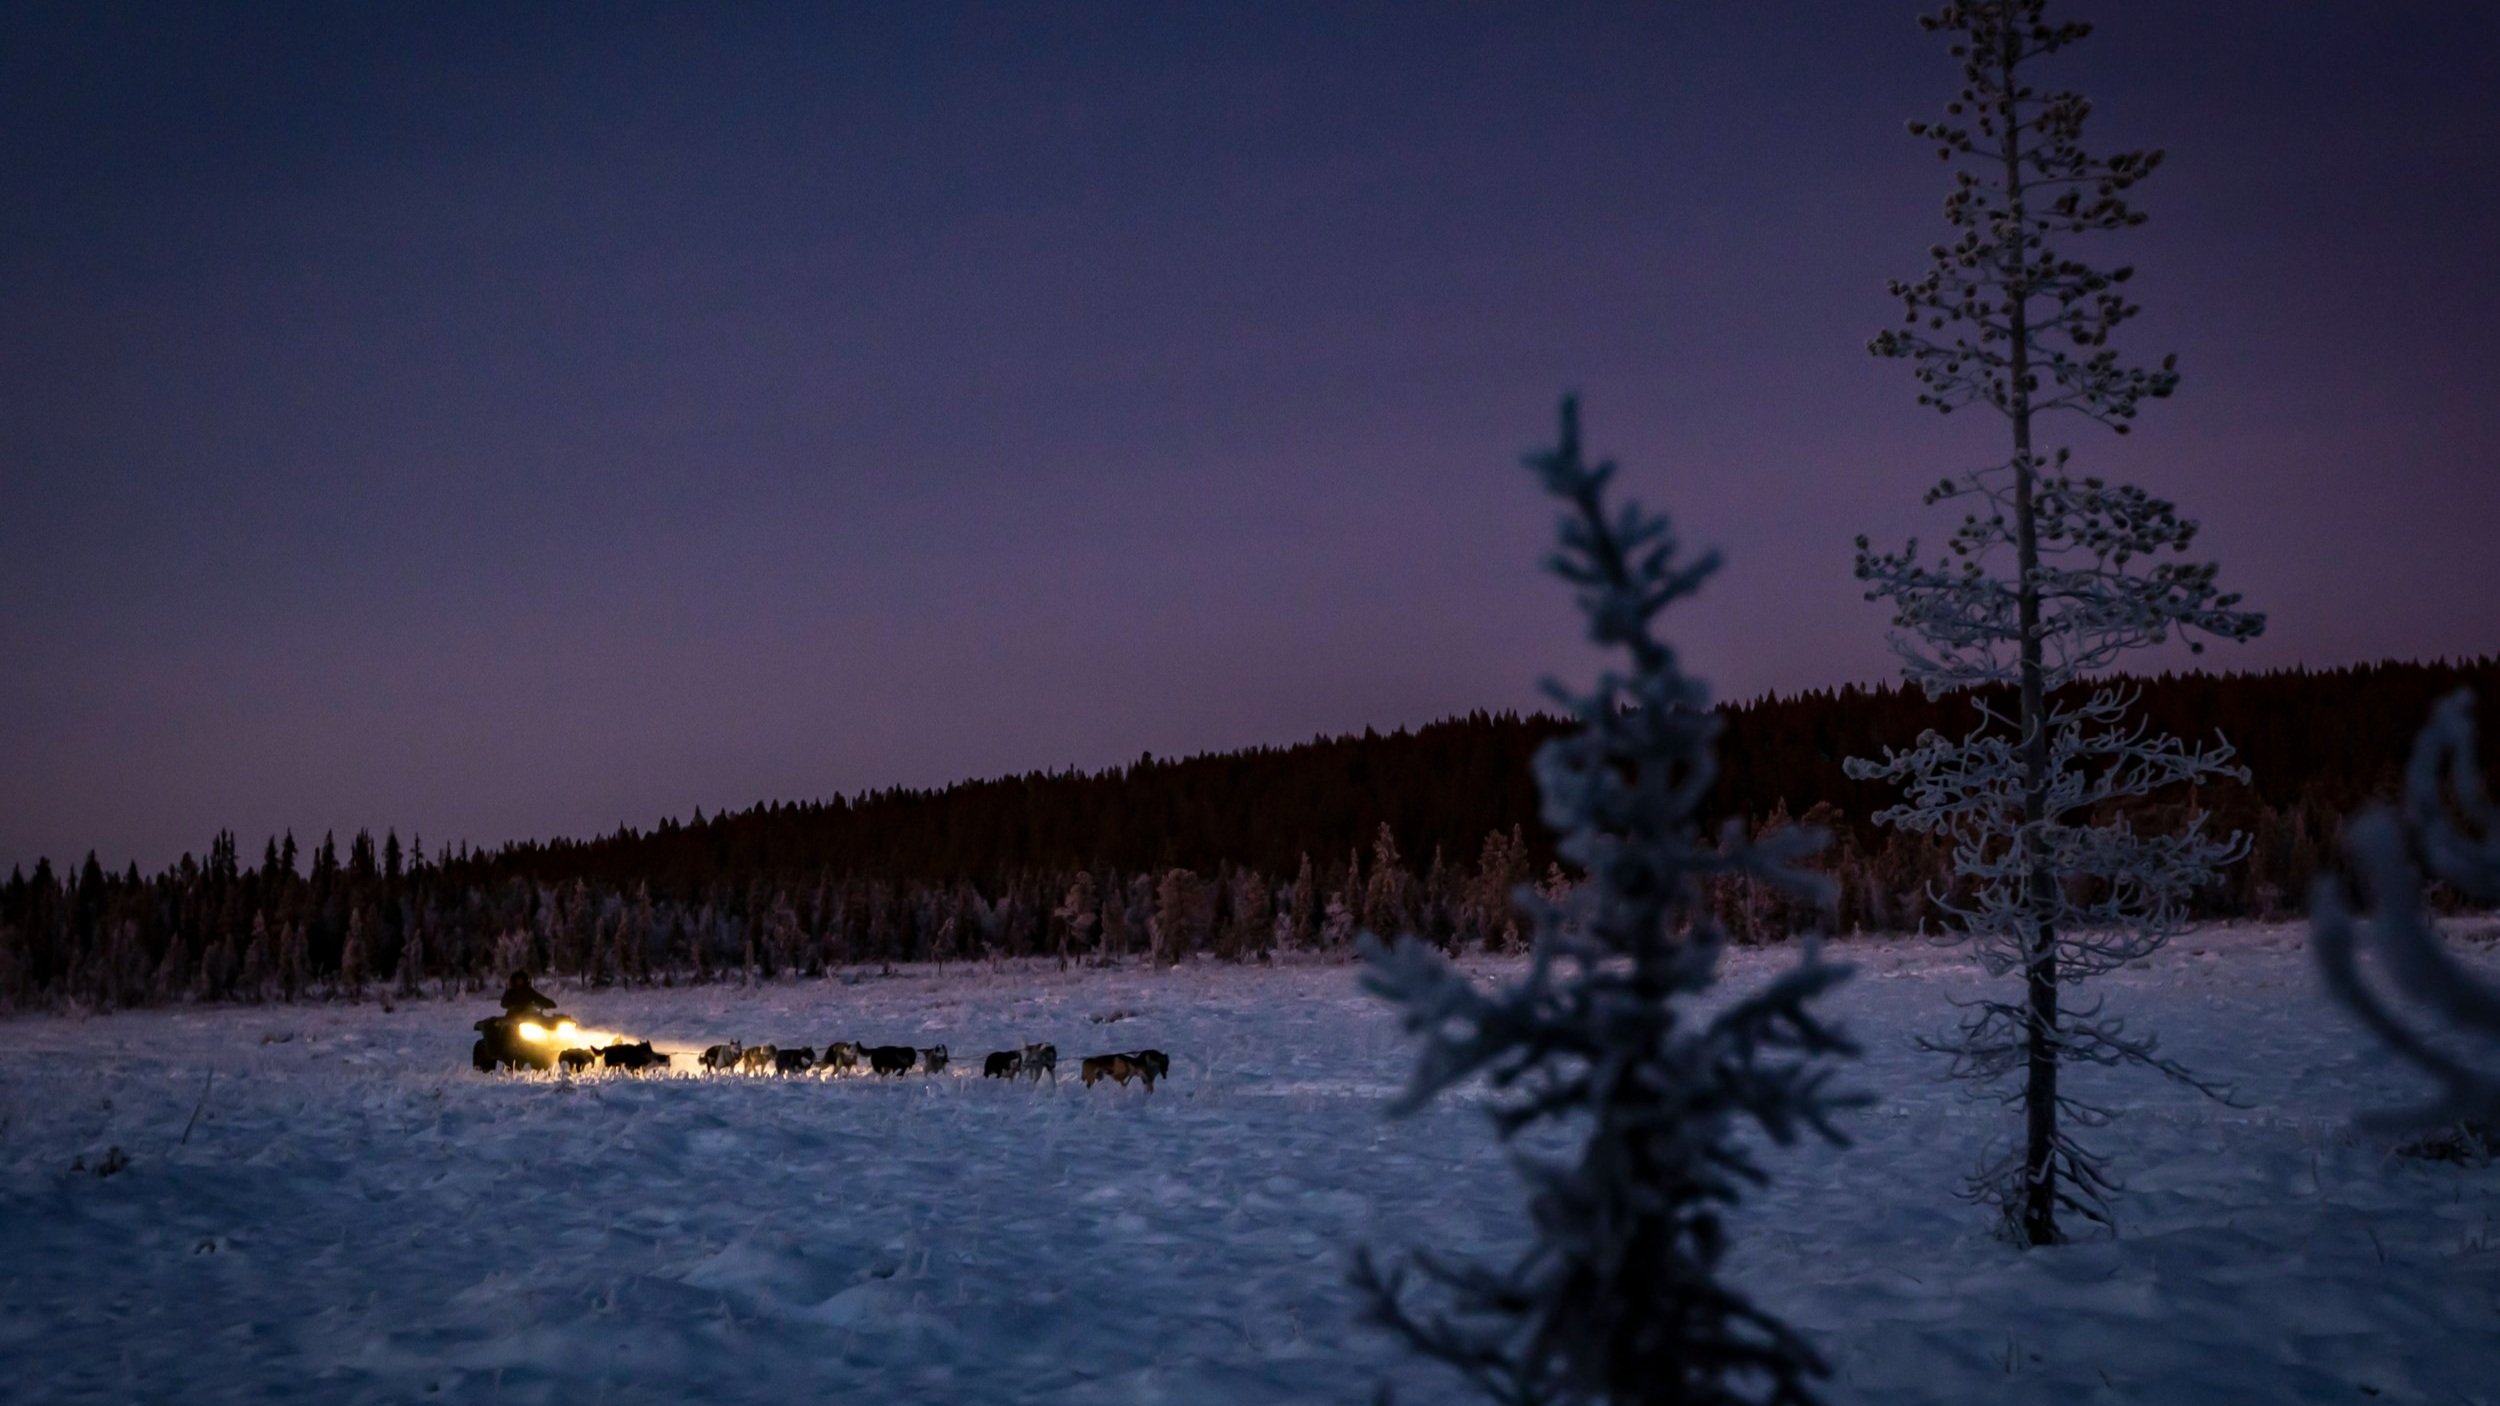 Early night Husky Dog sledding tours with Snowdog - Kiruna (Swedish Lapland) 